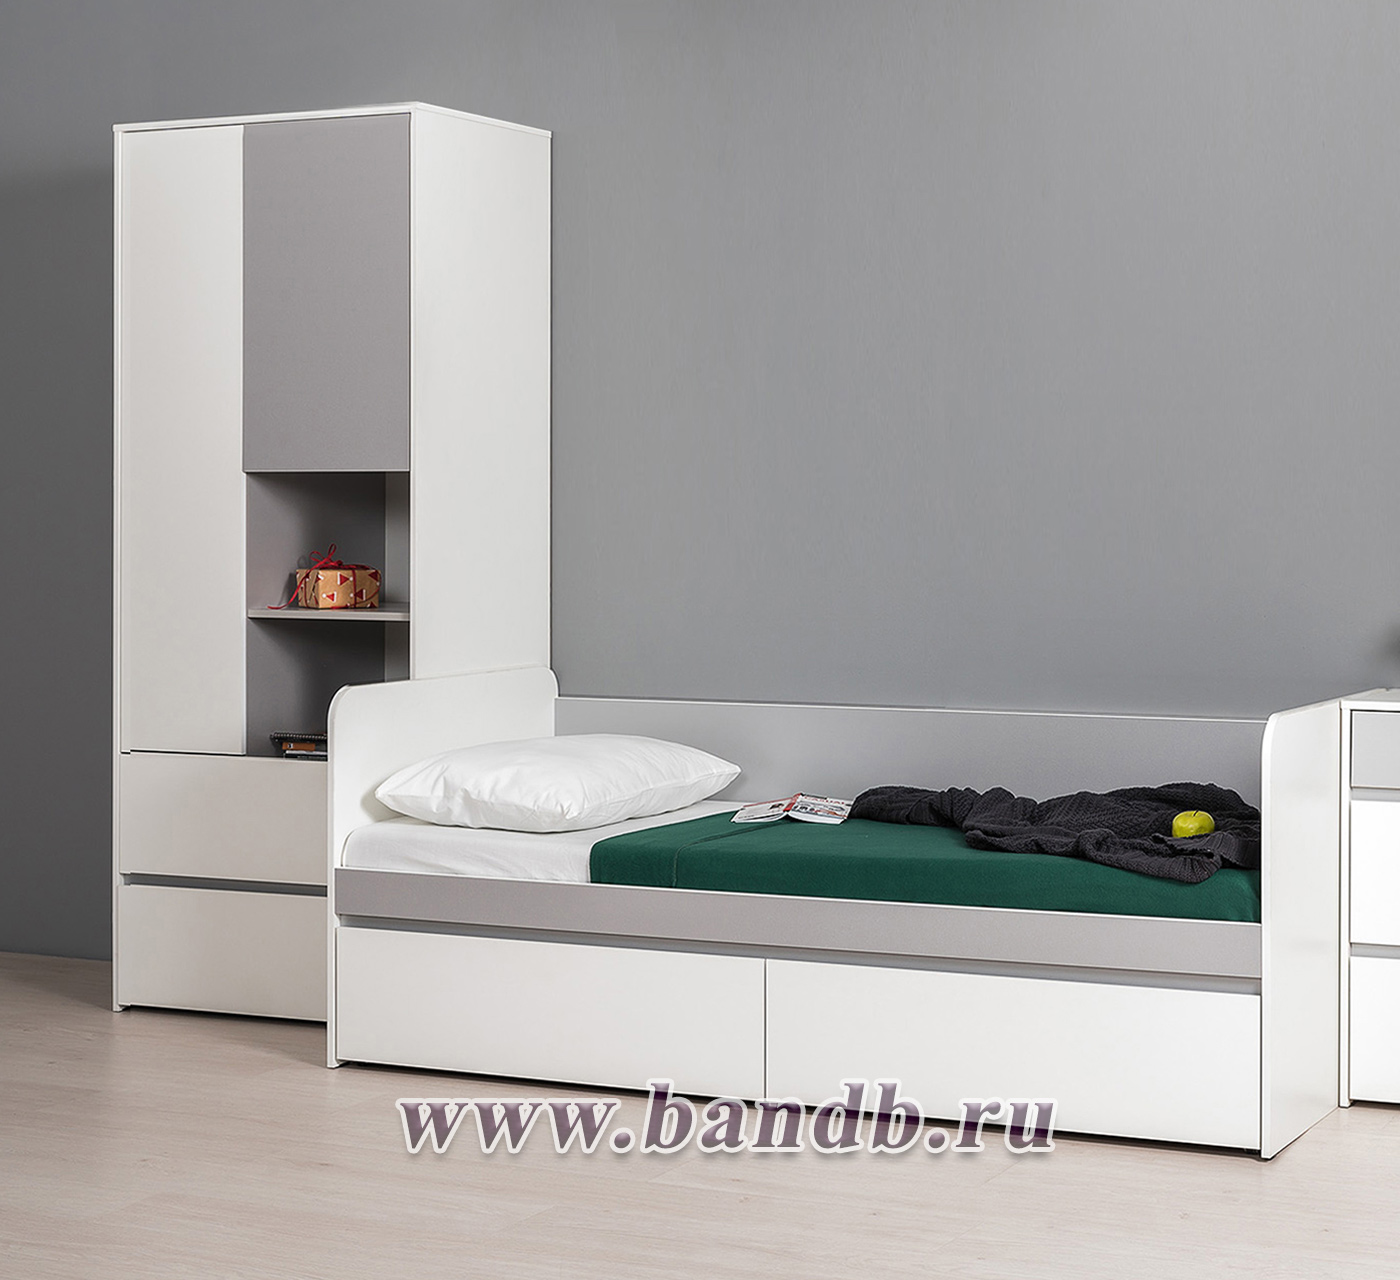 Детская кровать с ящиками и шкаф Торонто цвет белый шагрень/стальной серый Картинка № 9